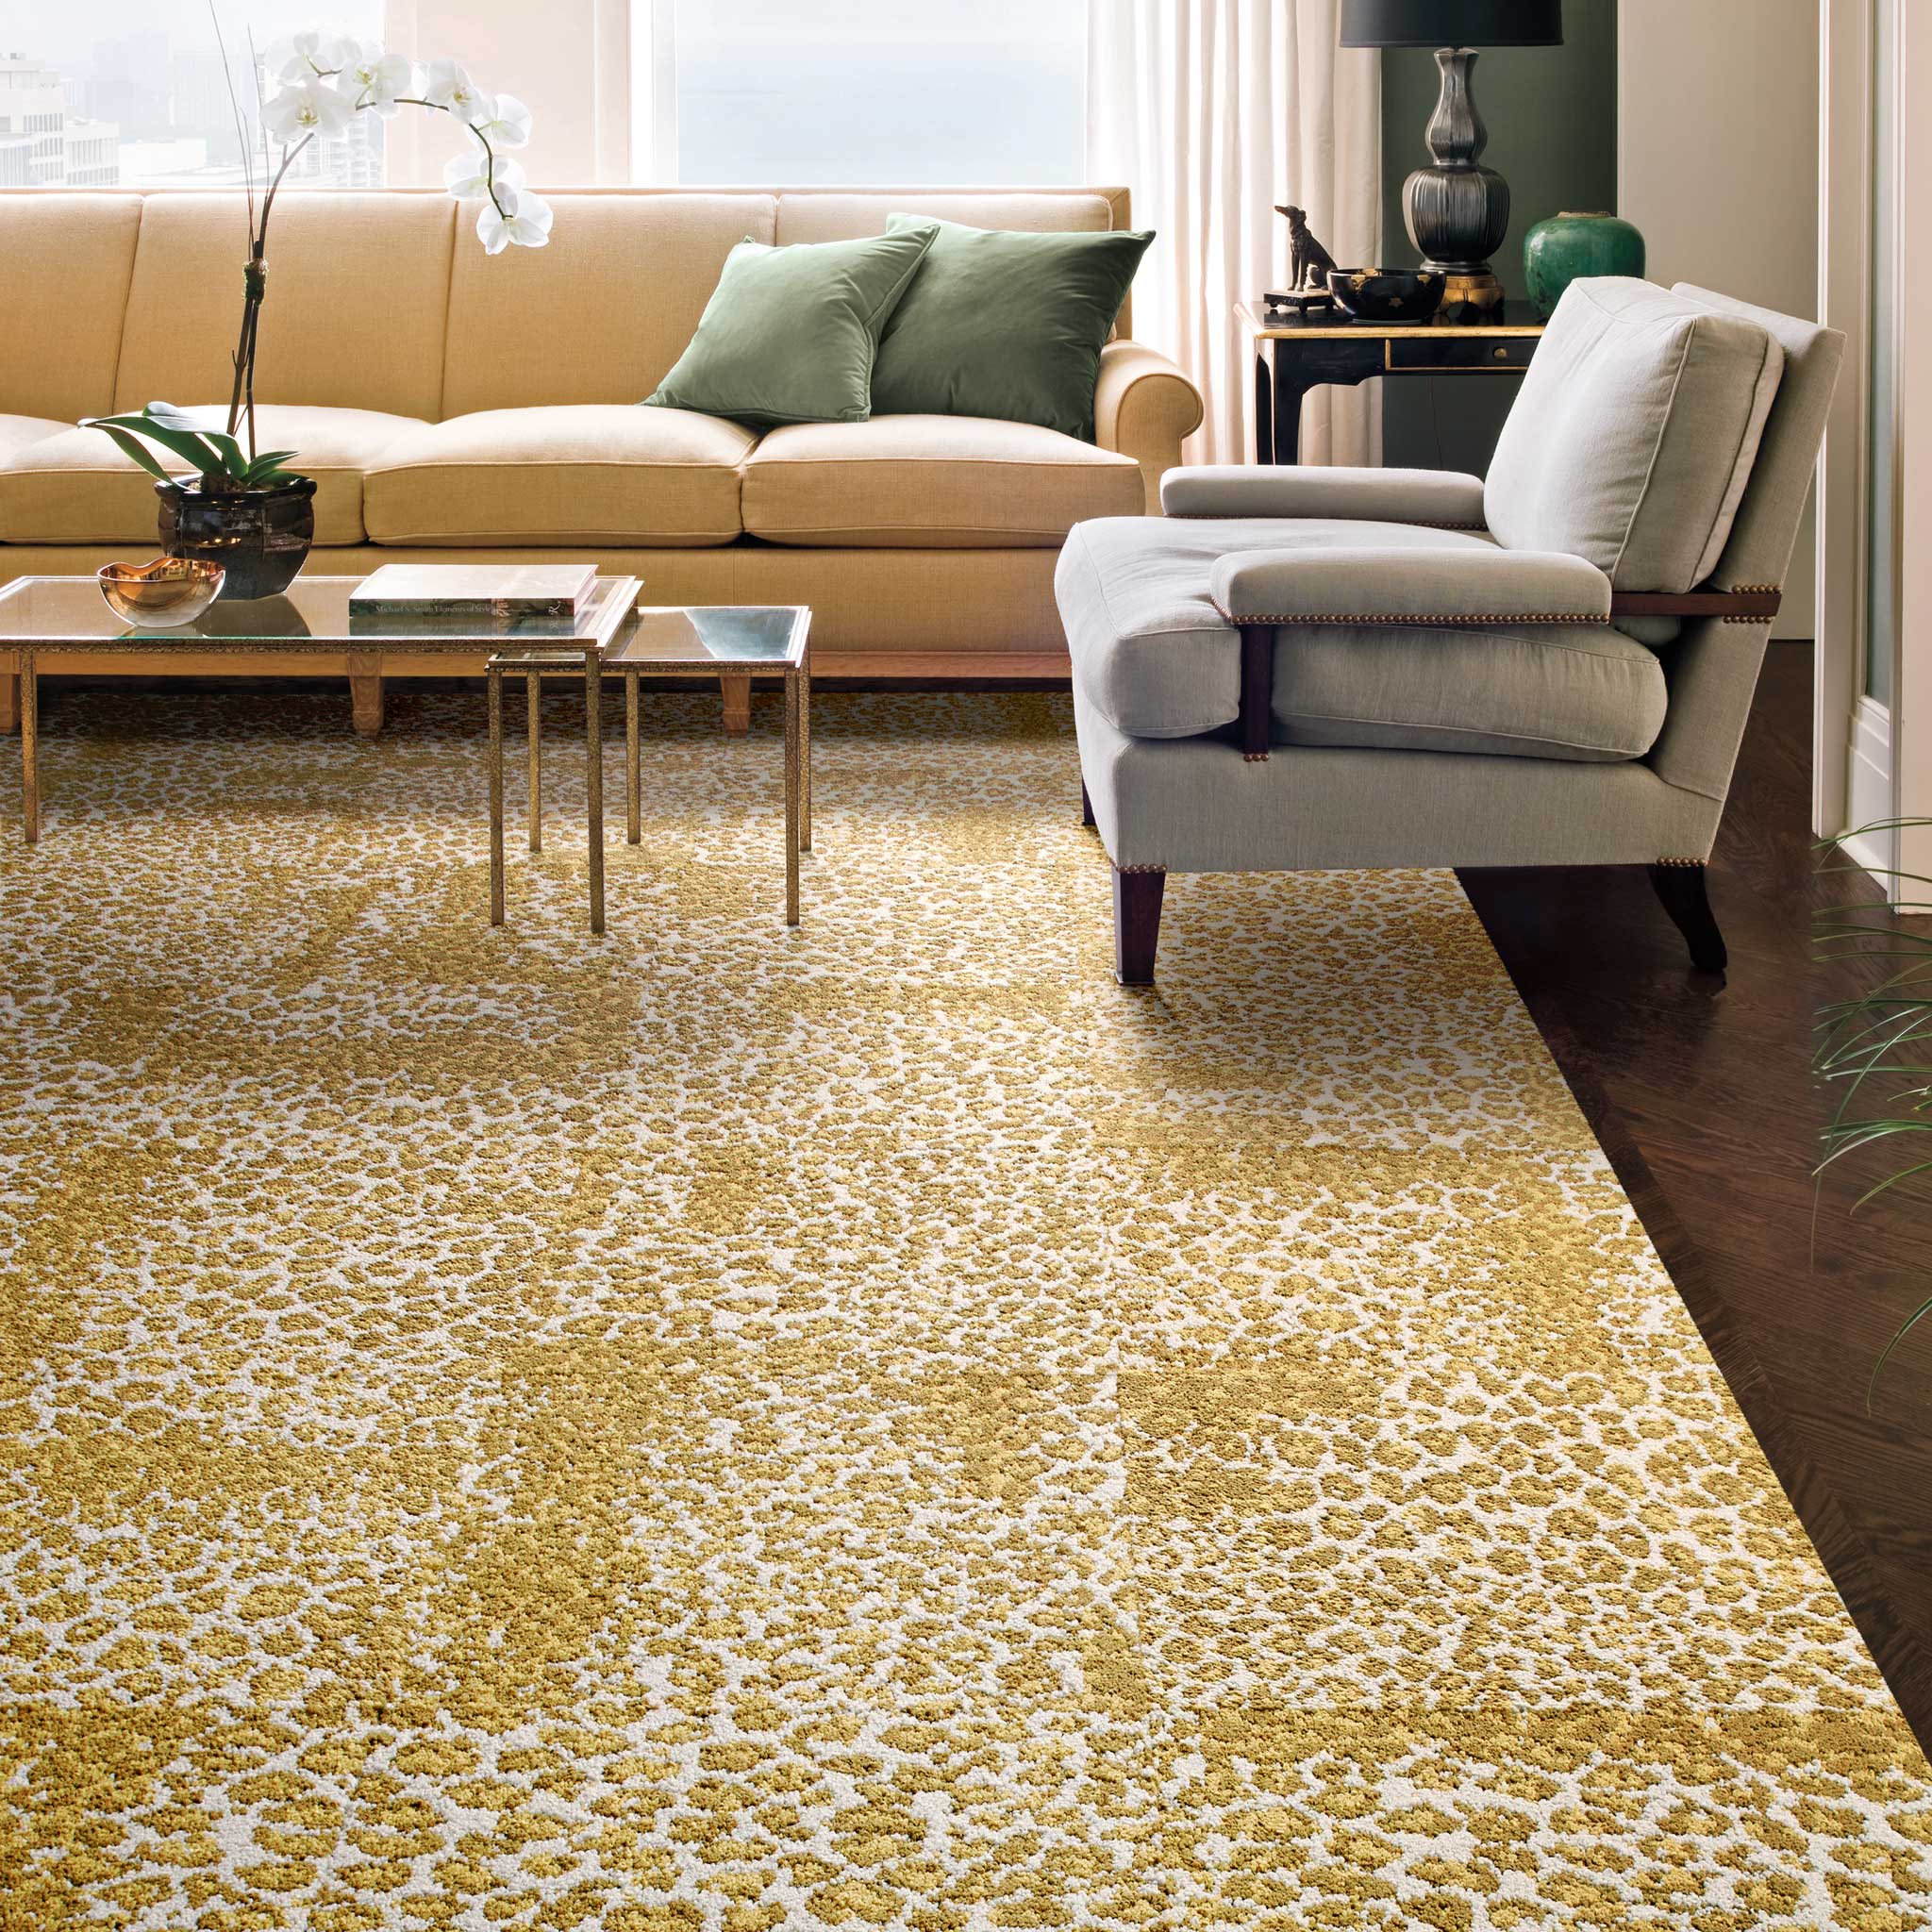 tile rugs designs